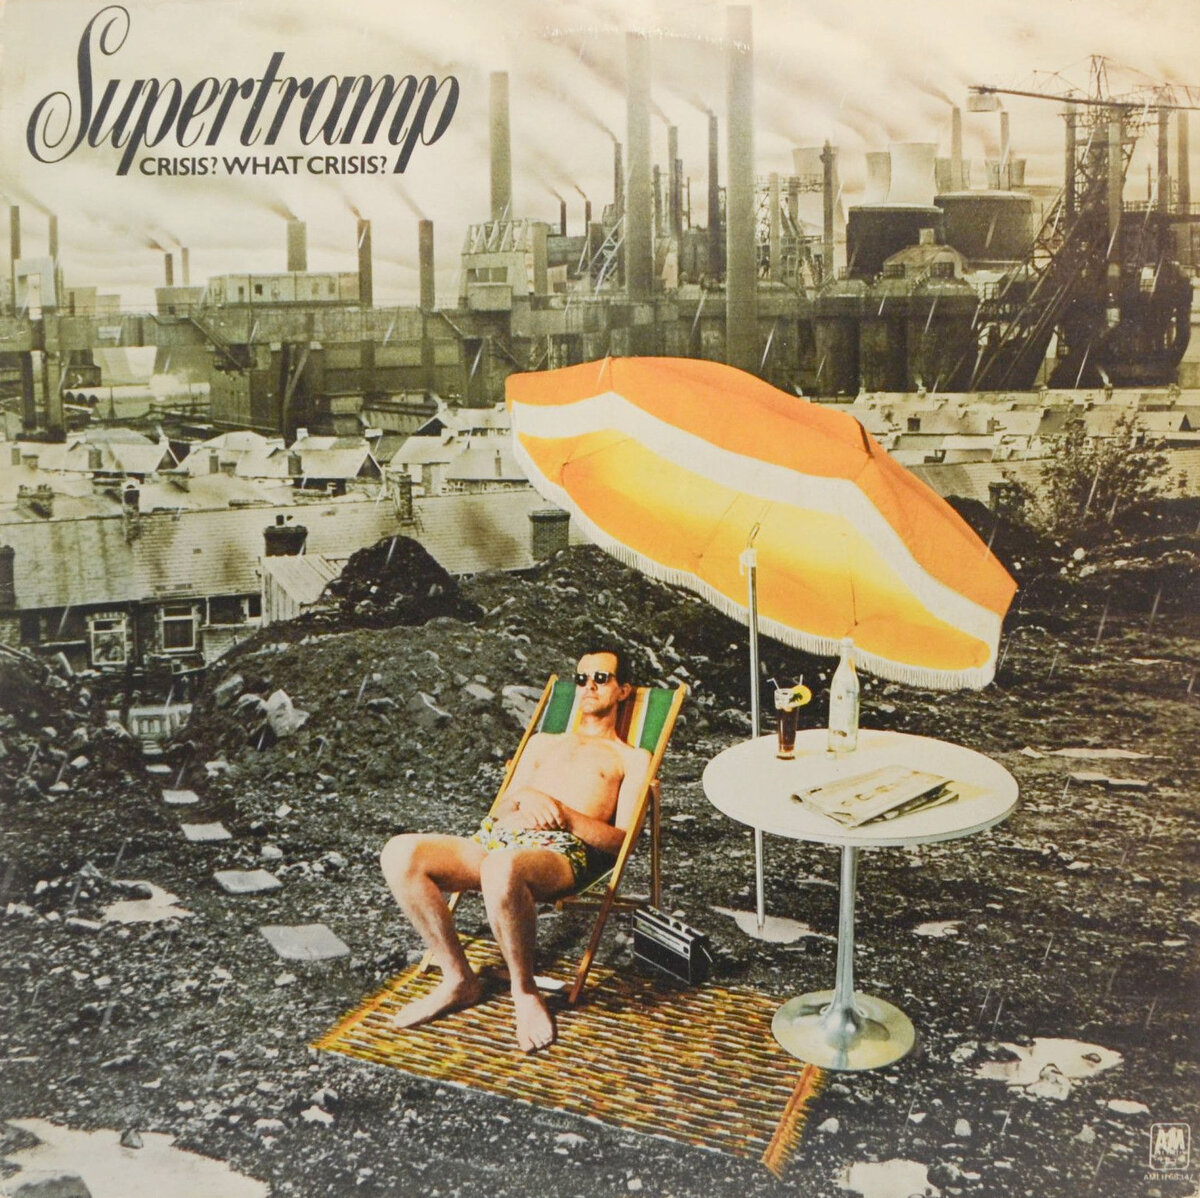 «Кризис? Какой кризис?» Обложка альбома британской группы Supertramp, выполненная в духе чёрного юмора, сохраняет актуальность спустя годы.